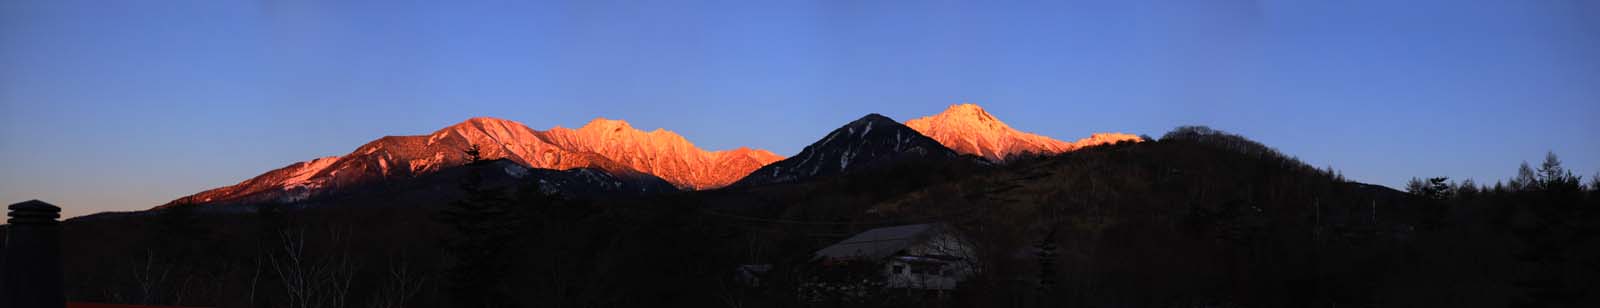 fotografia, material, livra, ajardine, imagine, proveja fotografia,Yatsugatake viso inteira, Yatsugatake, montanha de inverno, O amanhecer, A neve